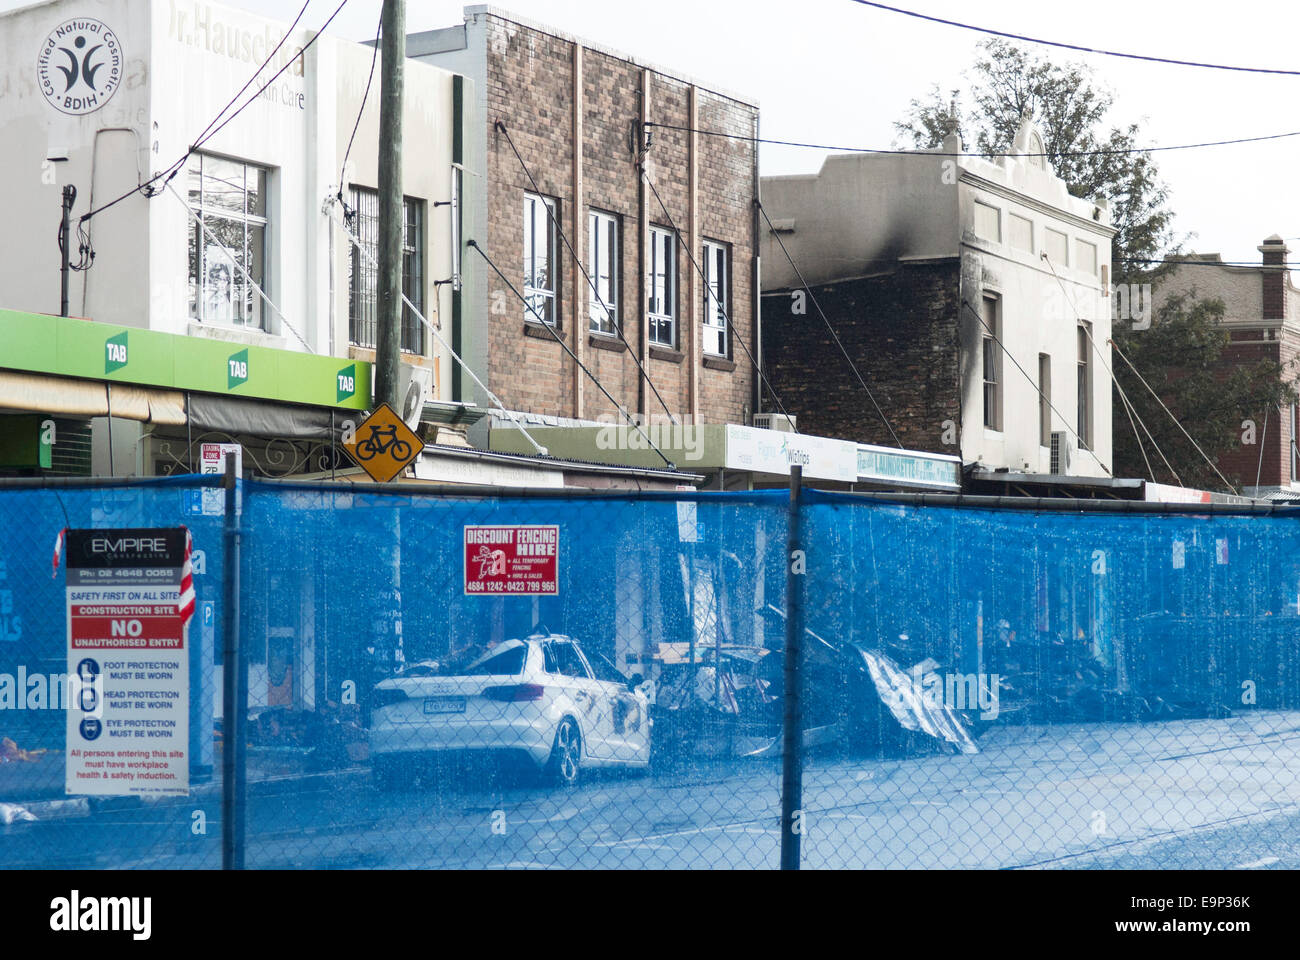 La chiusura di Darling Street, Rozelle, poco dopo il negozio di fatale esplosione che ha provocato la morte di tre persone. Foto Stock